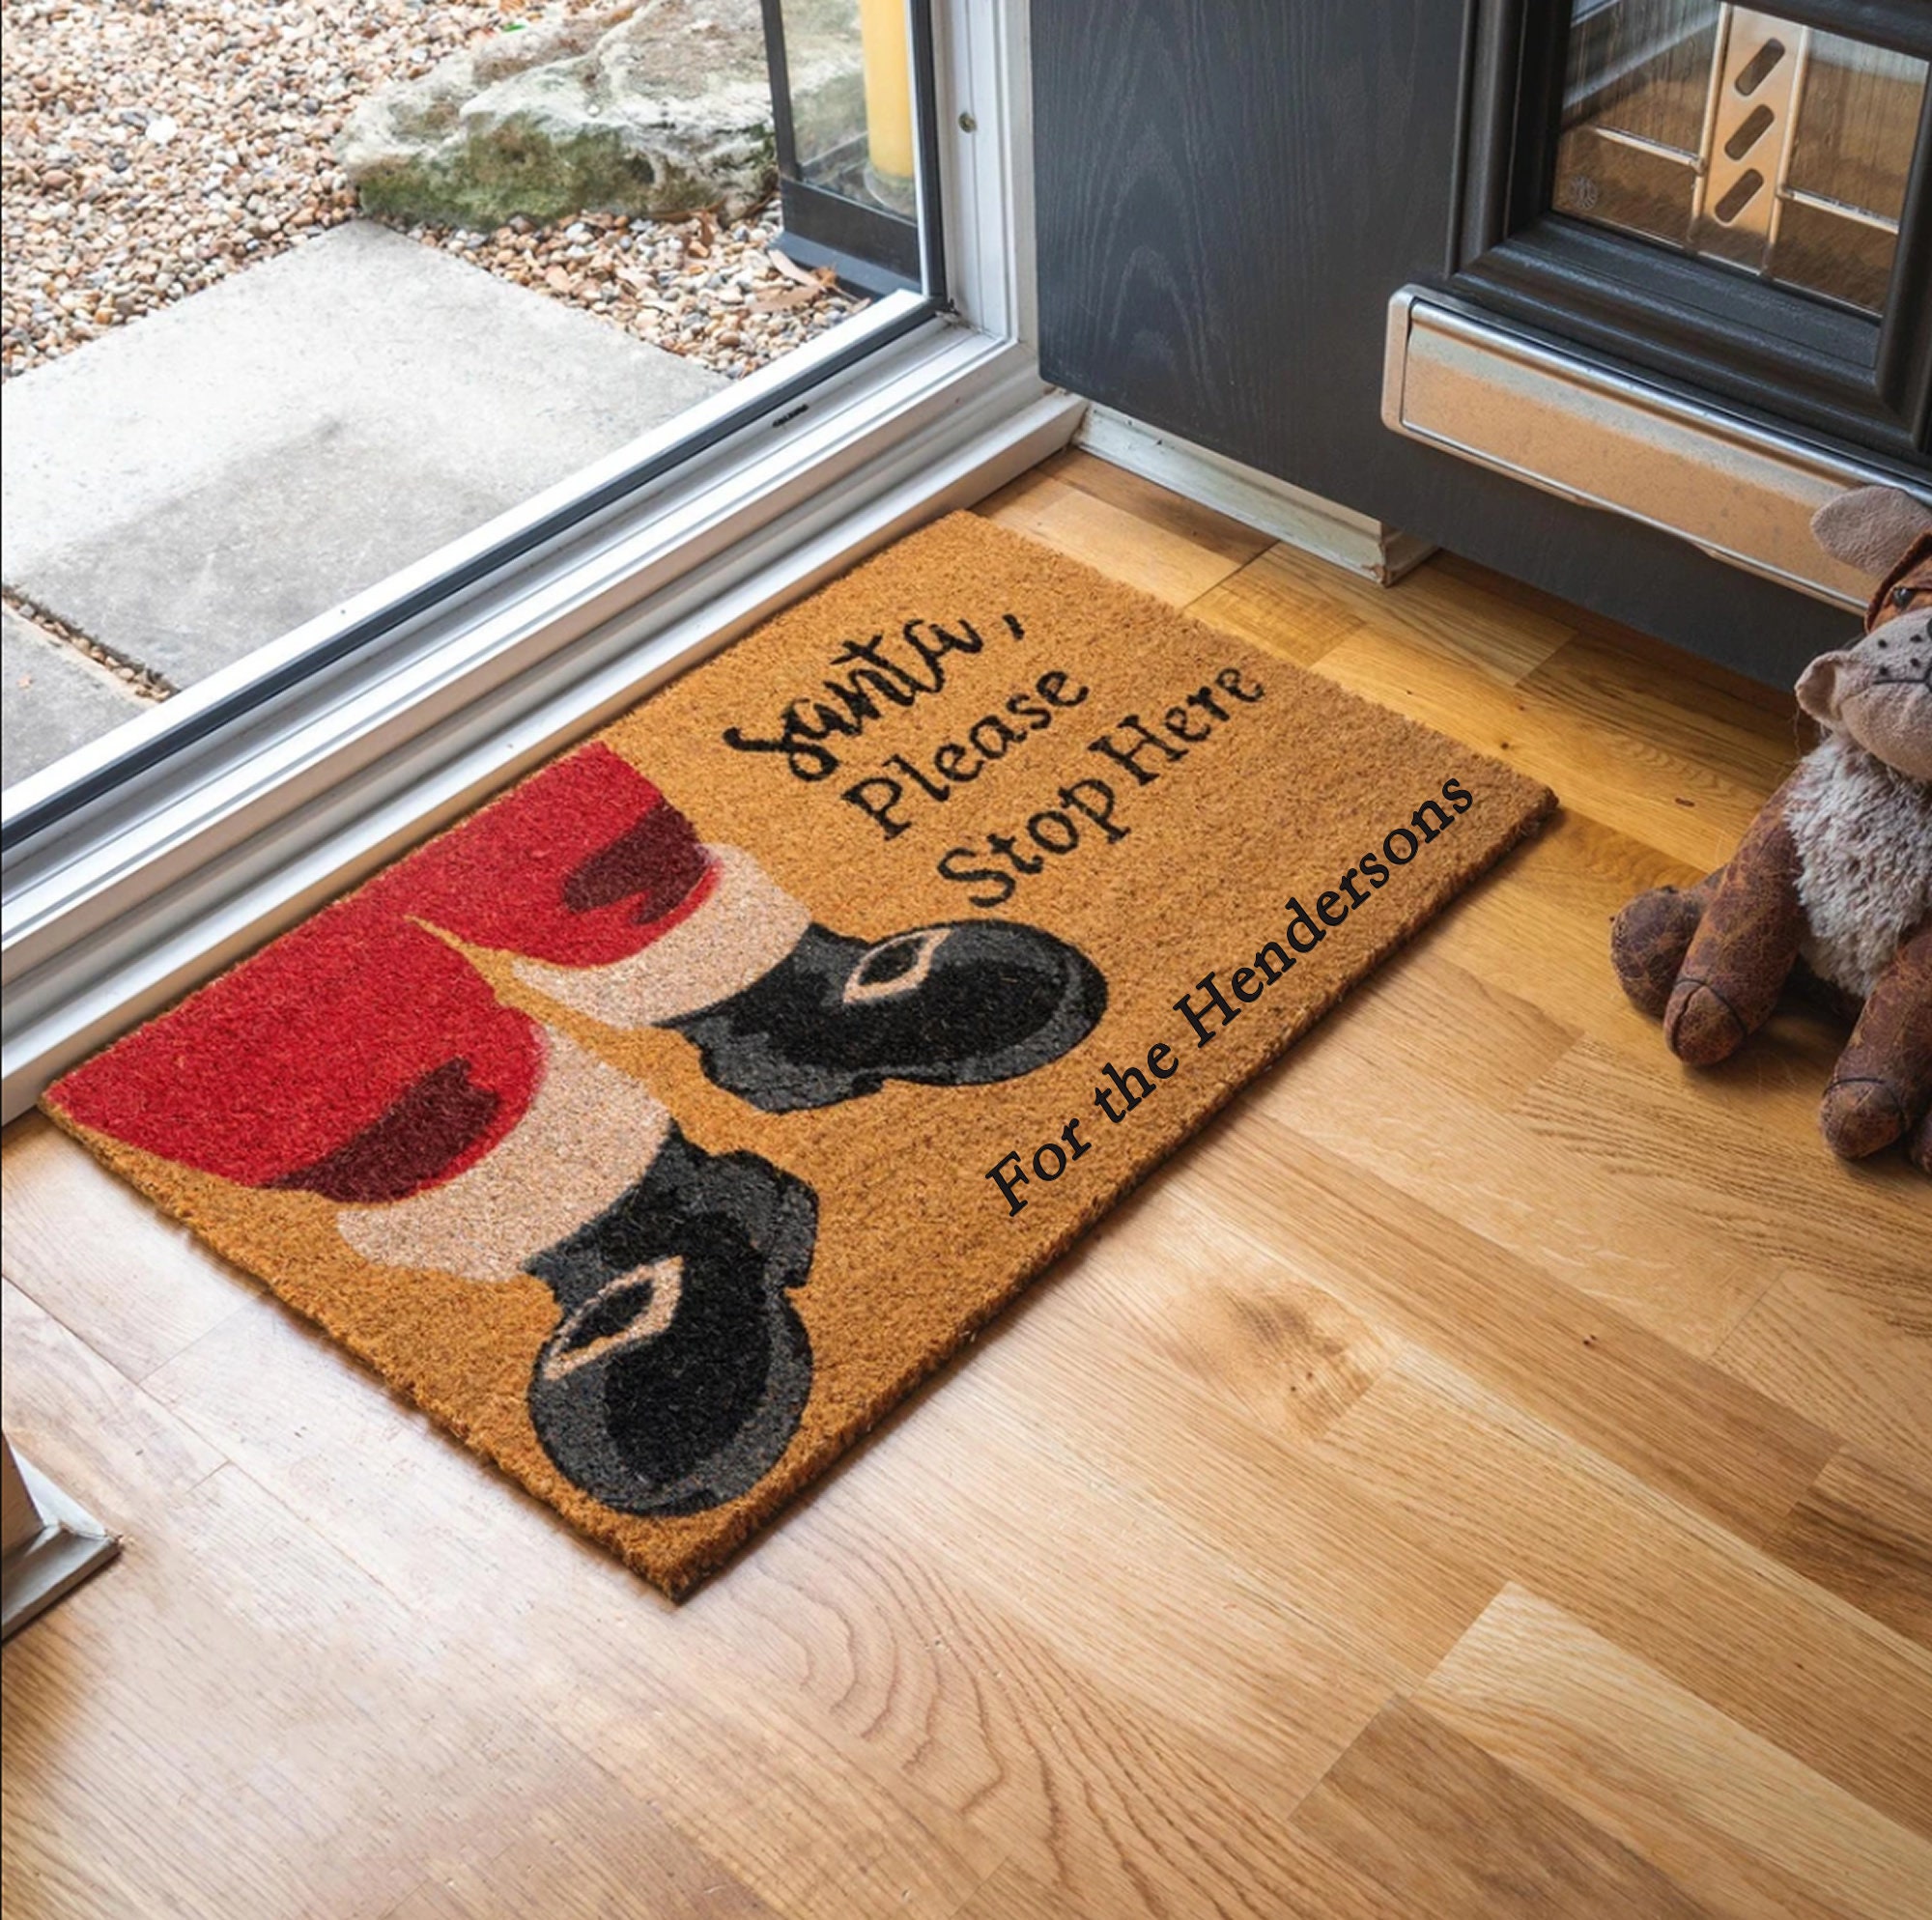 Onekie Indoor Door Mat, Retro Indoor Floor Mat - Non Slip Doormat